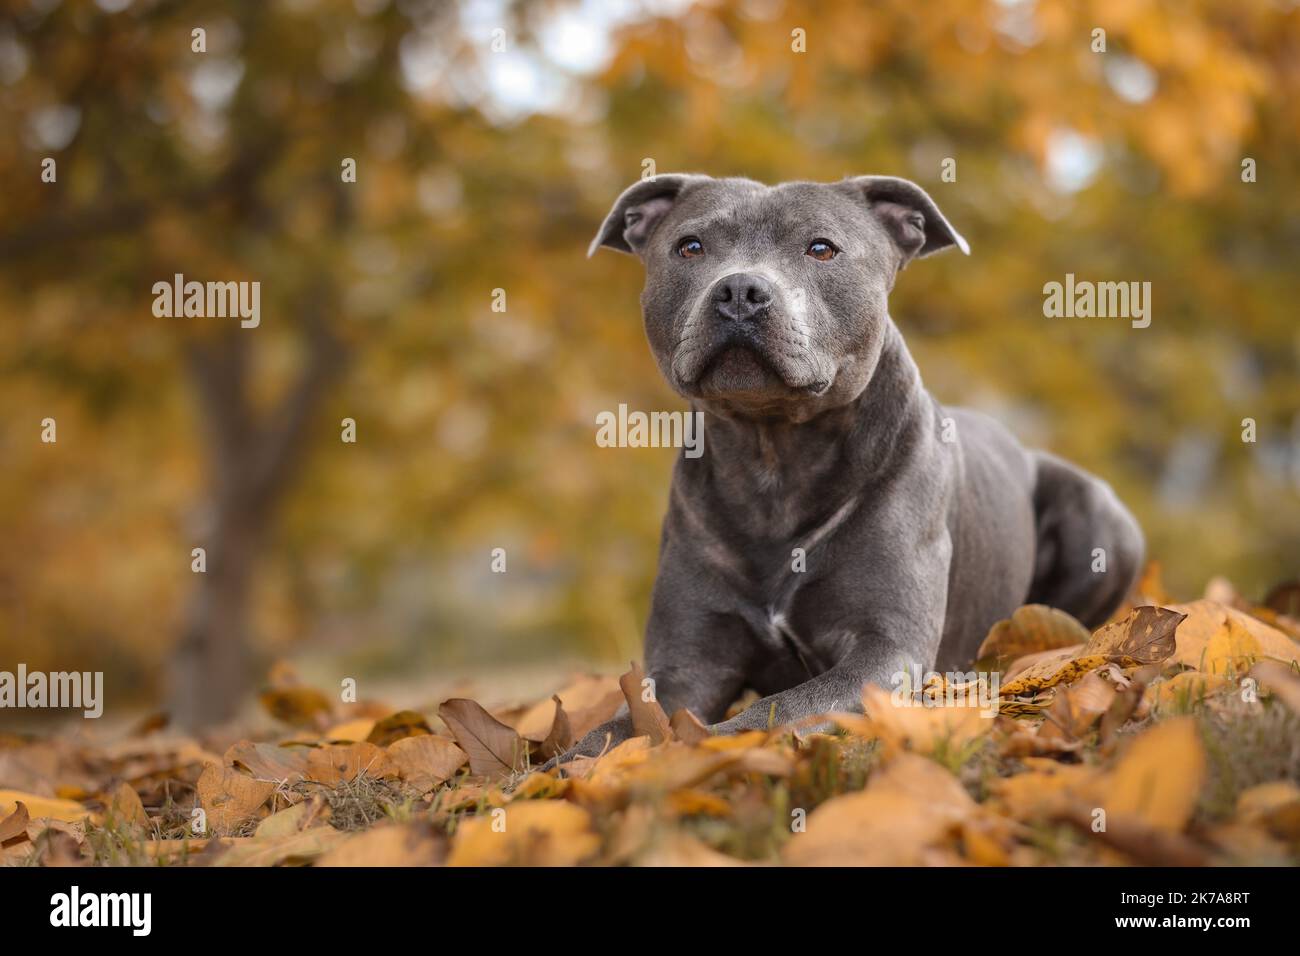 Portrait d'automne de Blue Staffy dans les feuilles mortes. Faible profondeur de champ du Staffordshire Bull Terrier chien couché en octobre nature. Banque D'Images